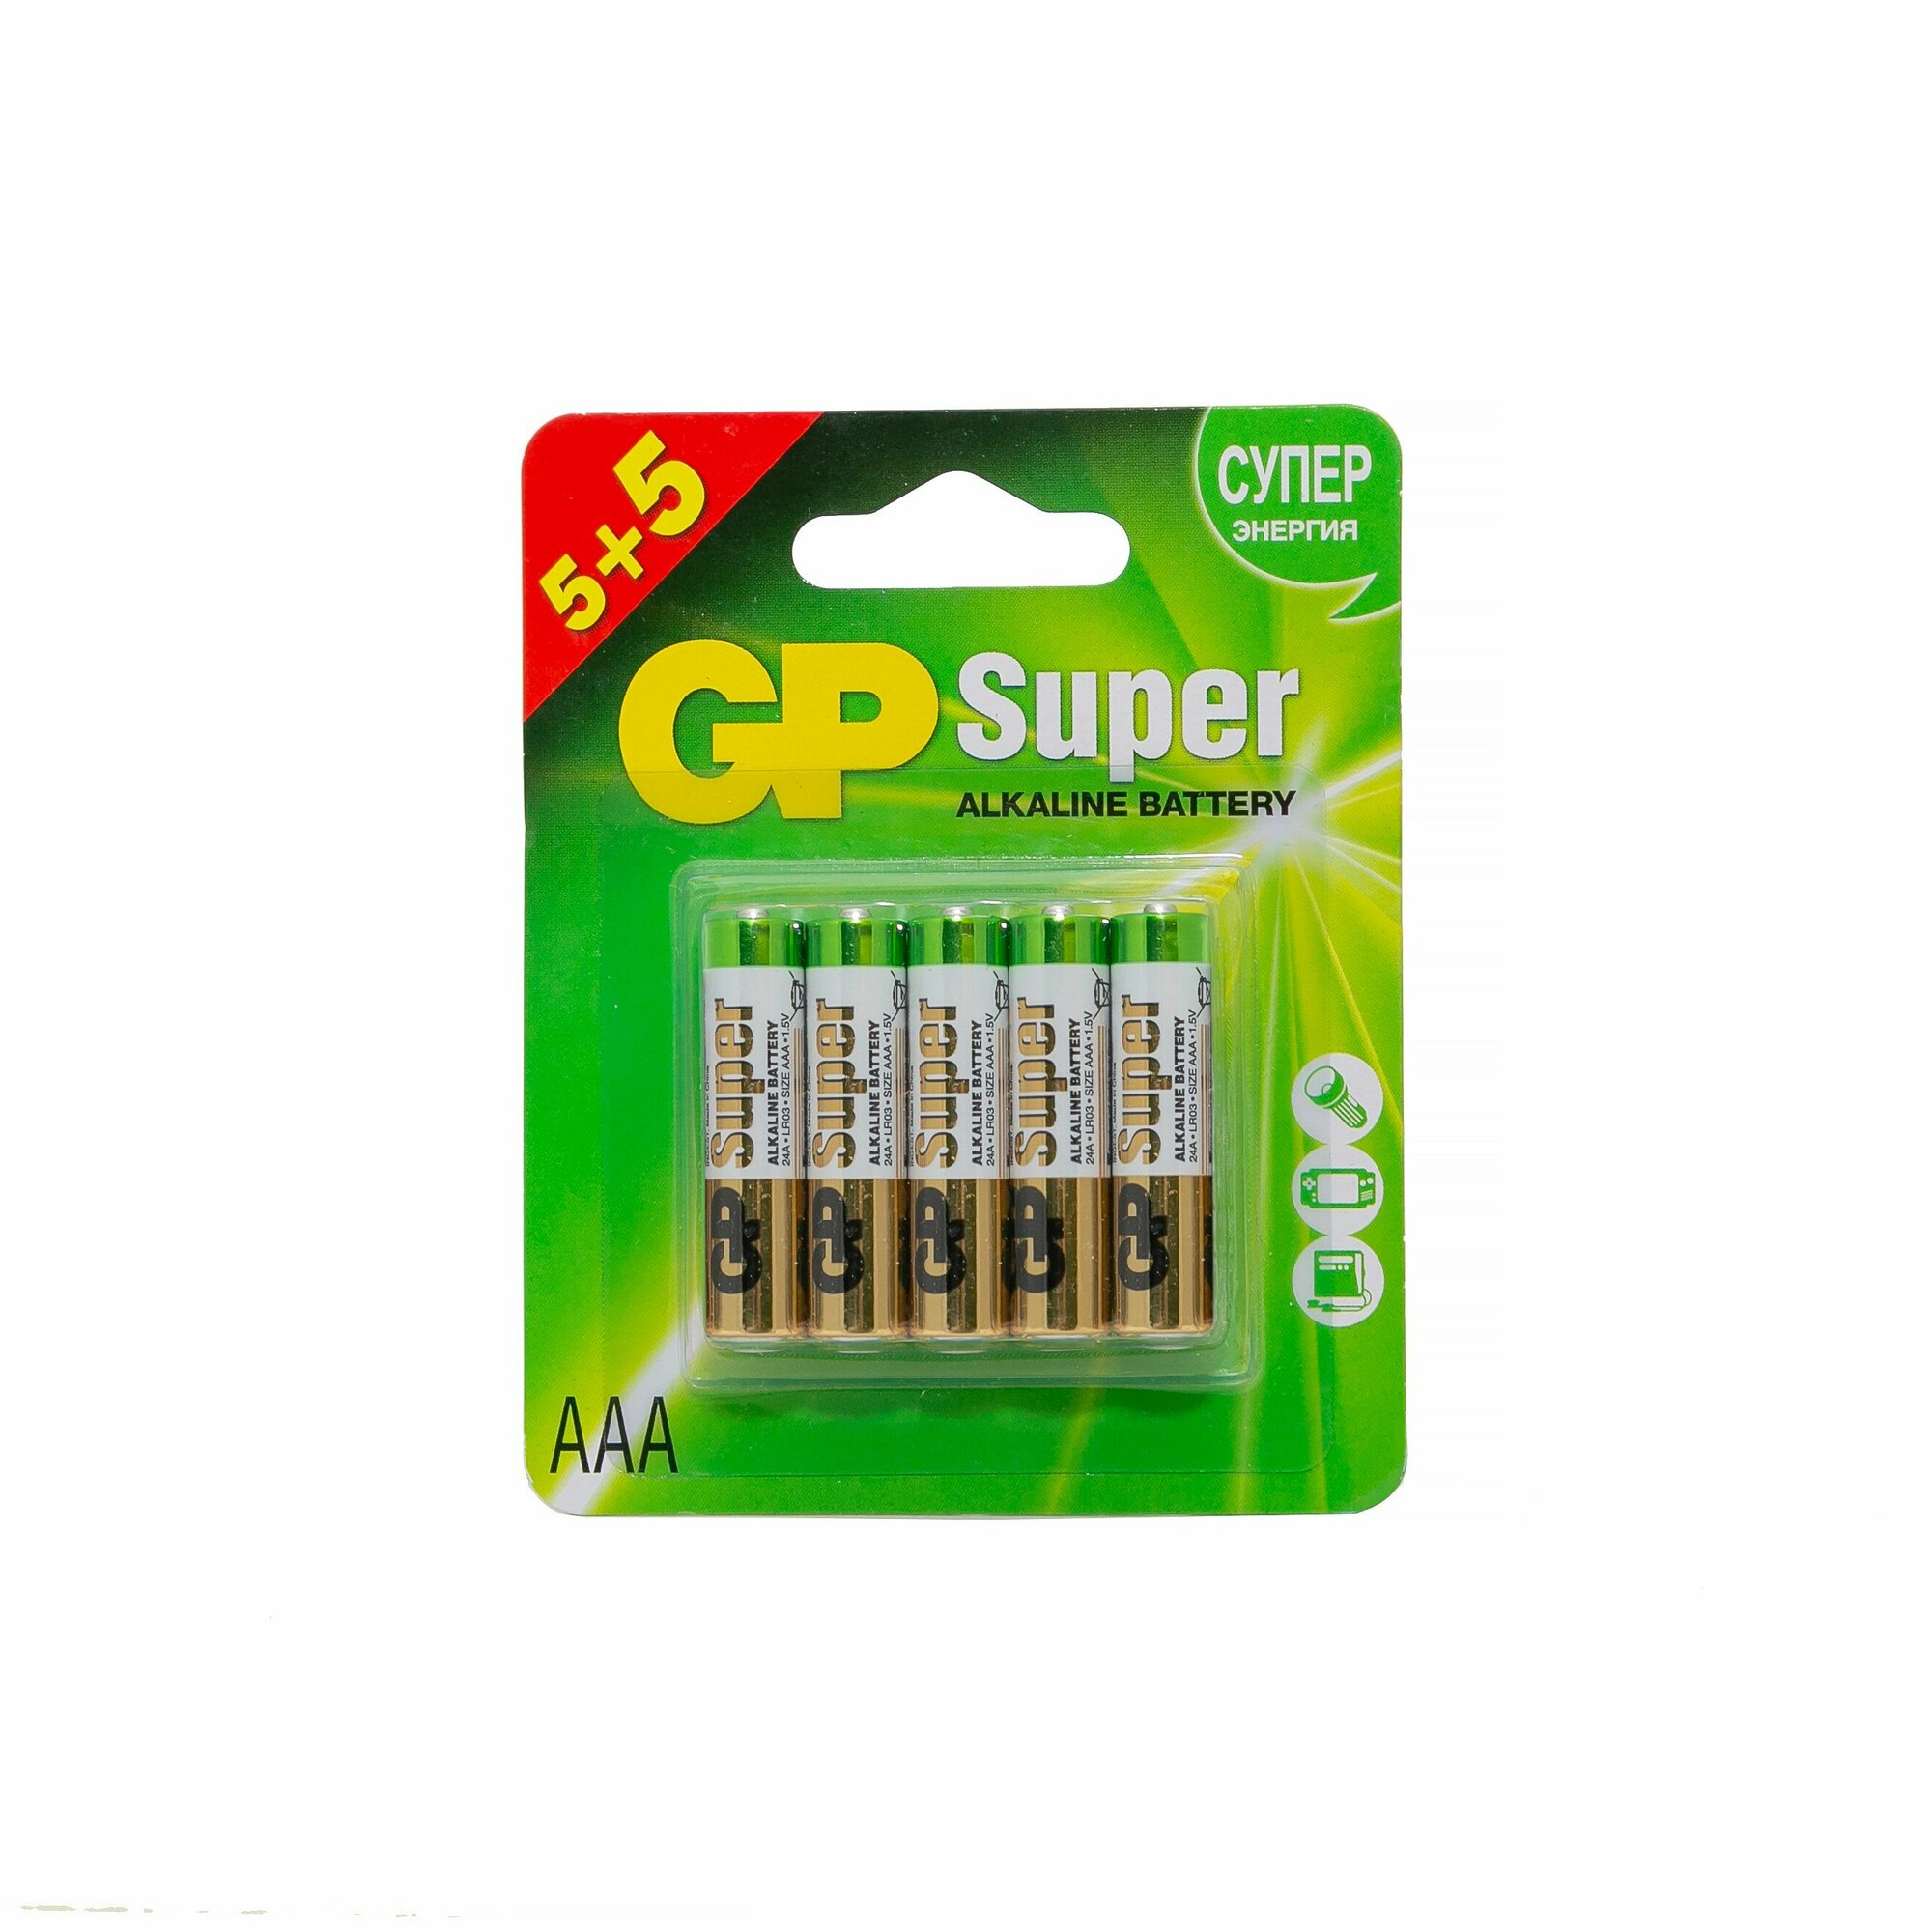 Батарейки GP Super Alkaline набор 8+2 типа AAA 10 шт.